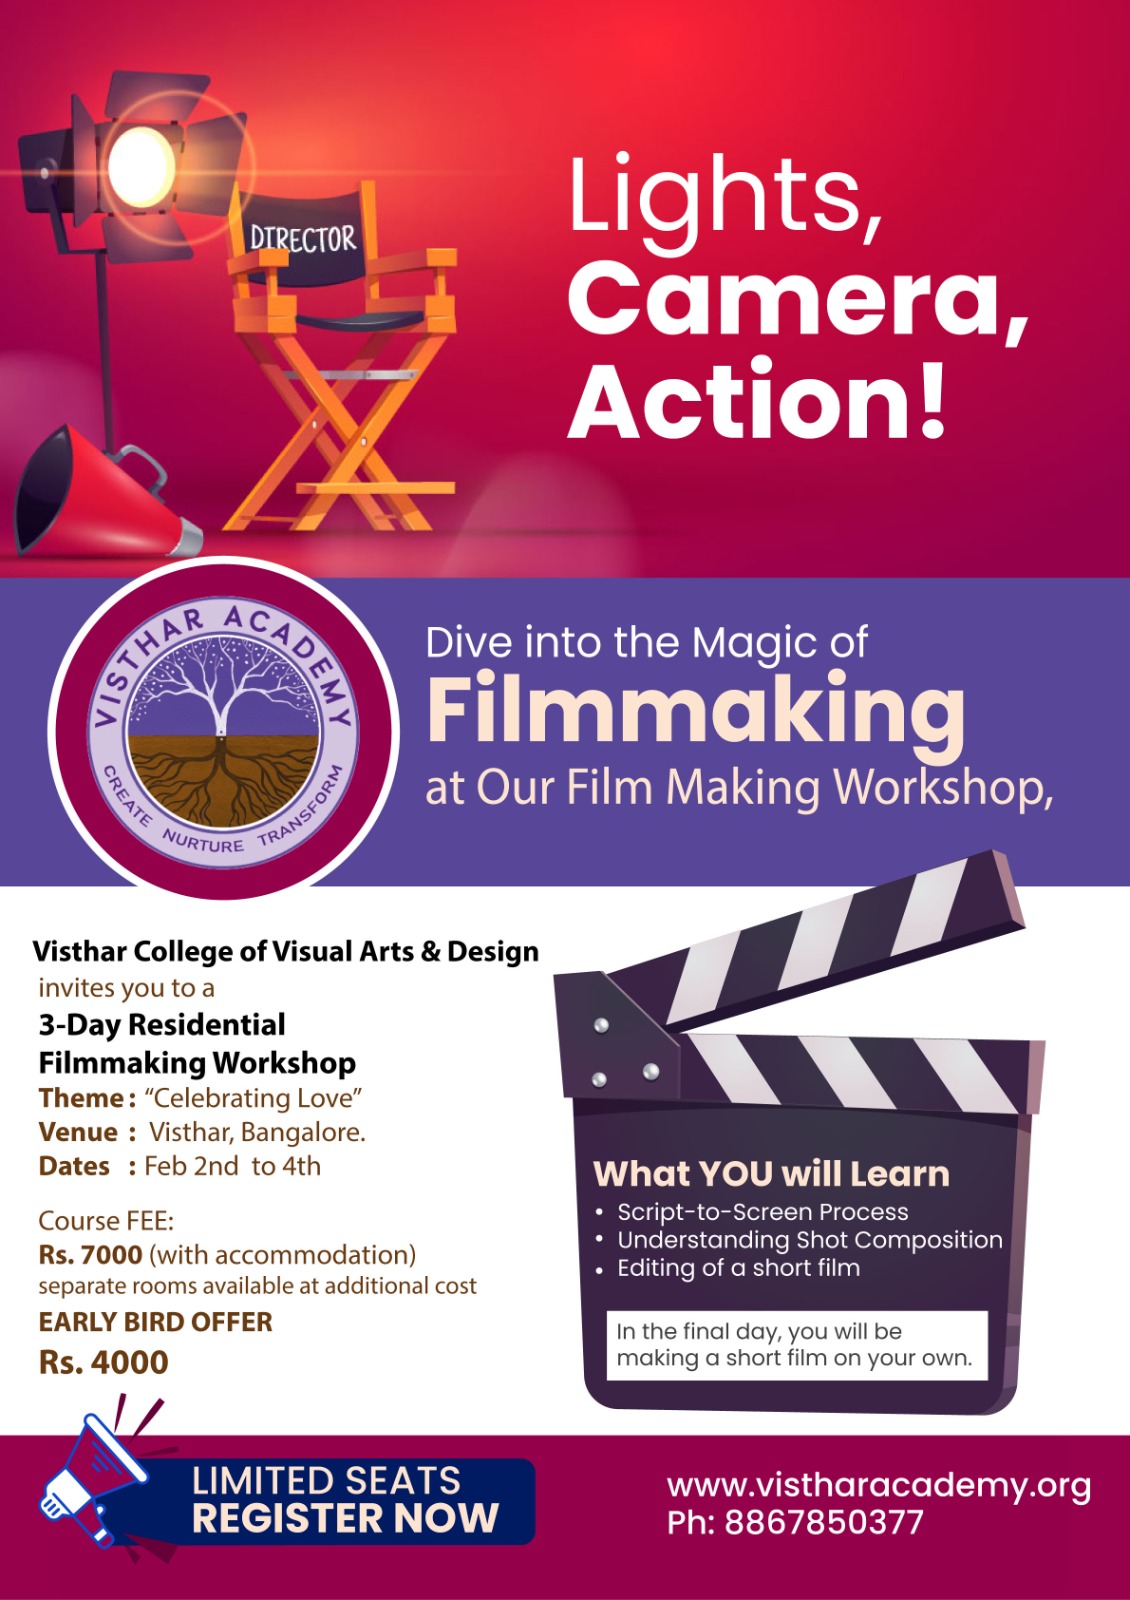 The Filmmaking Workshop